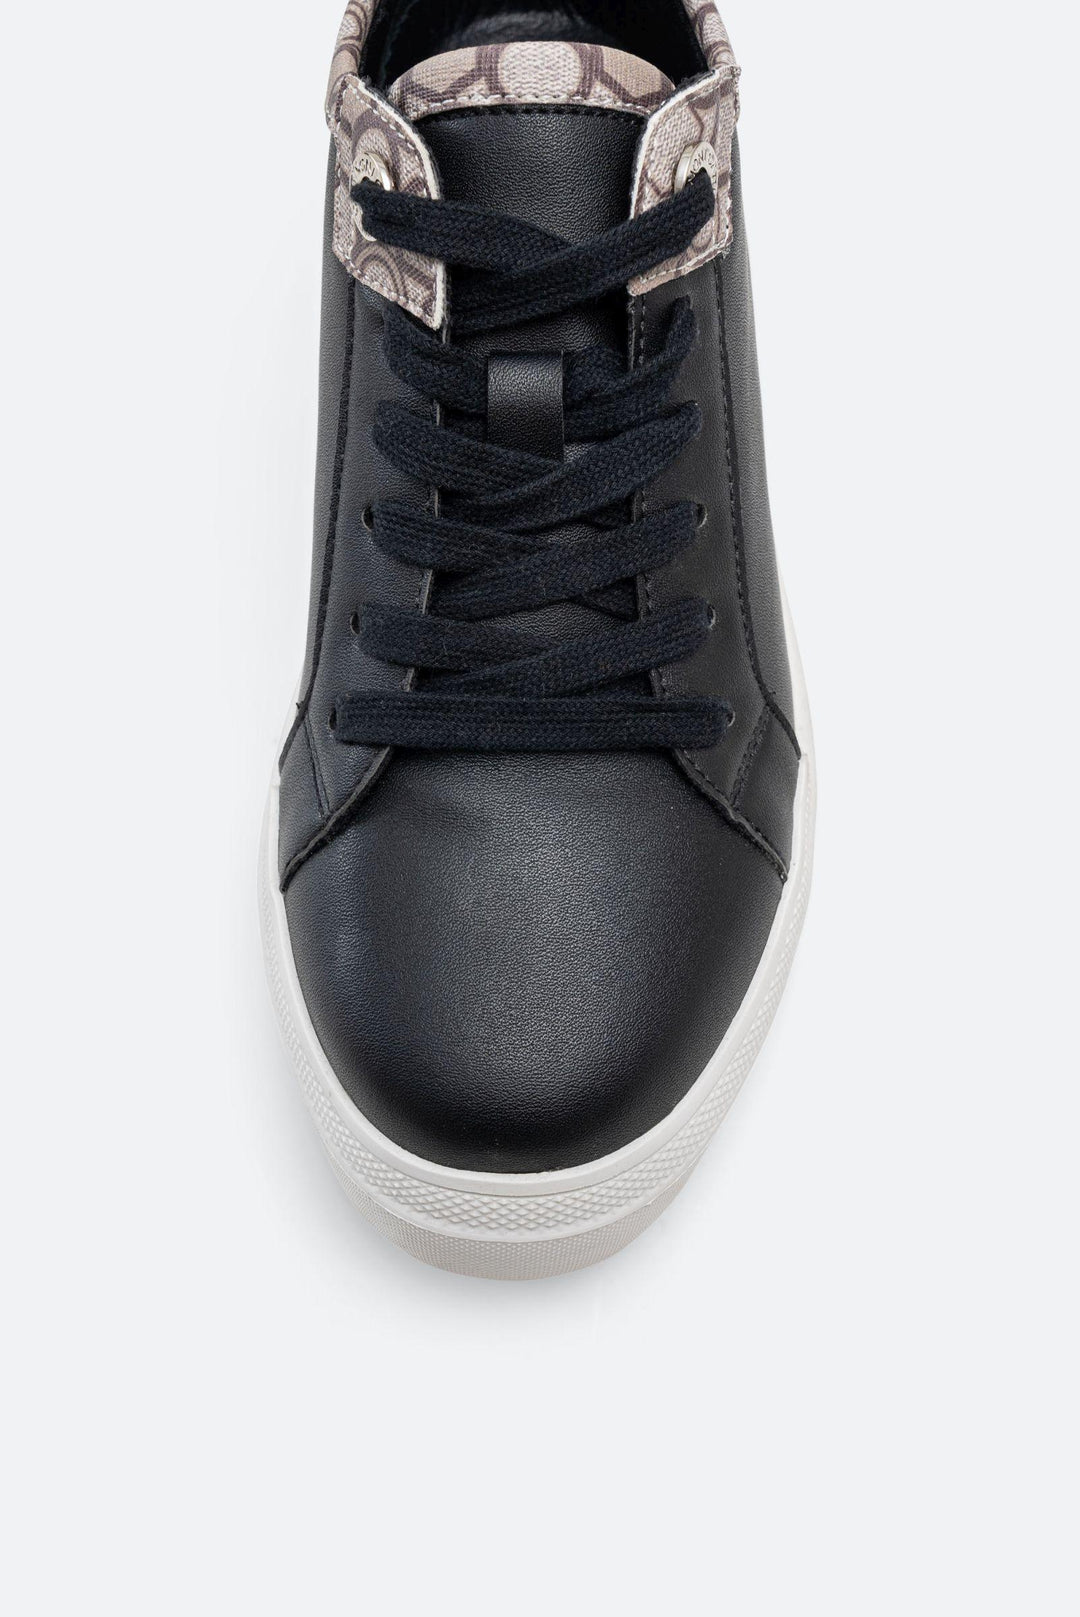 Sneaker Leon in similpelle stampa Teometric colore nero